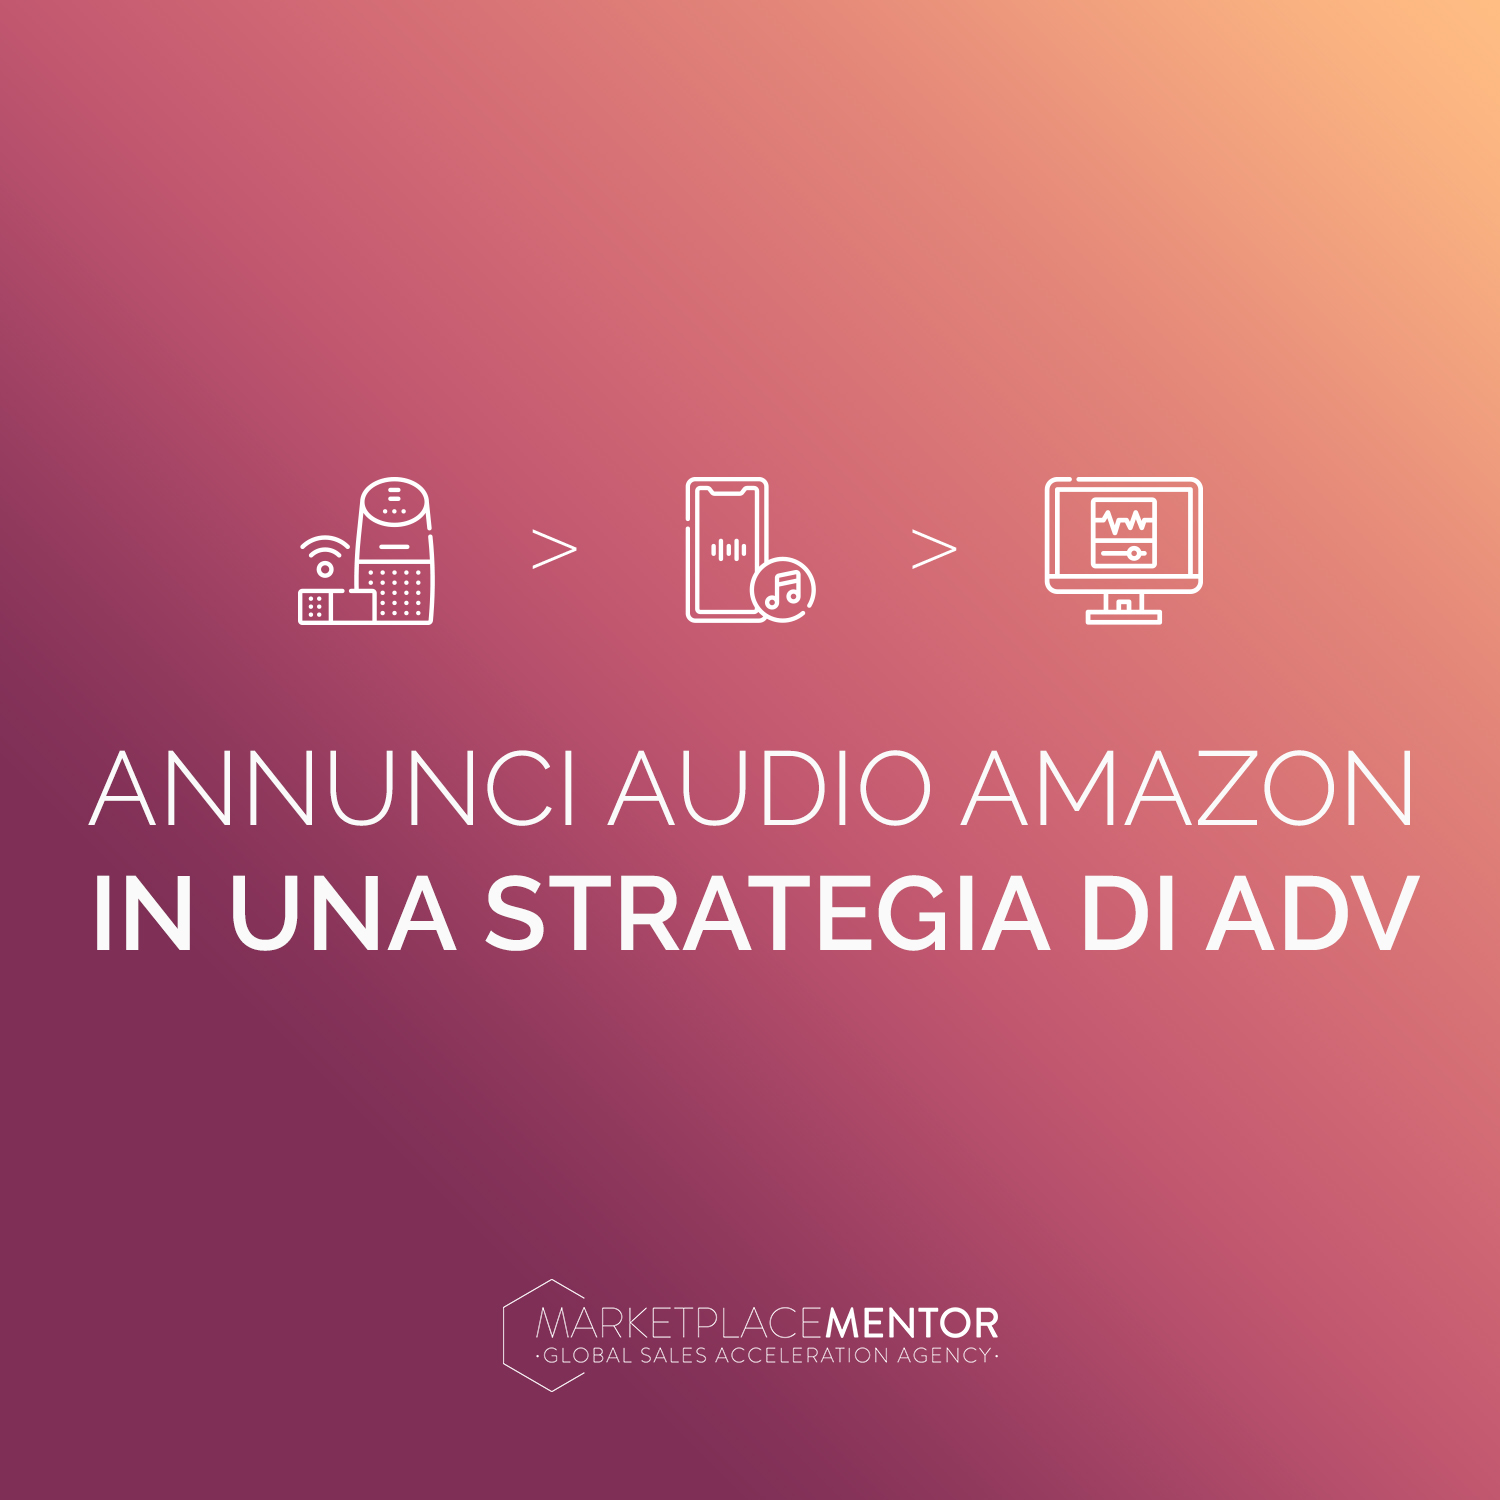 Gli annunci audio Amazon in una strategia di adv